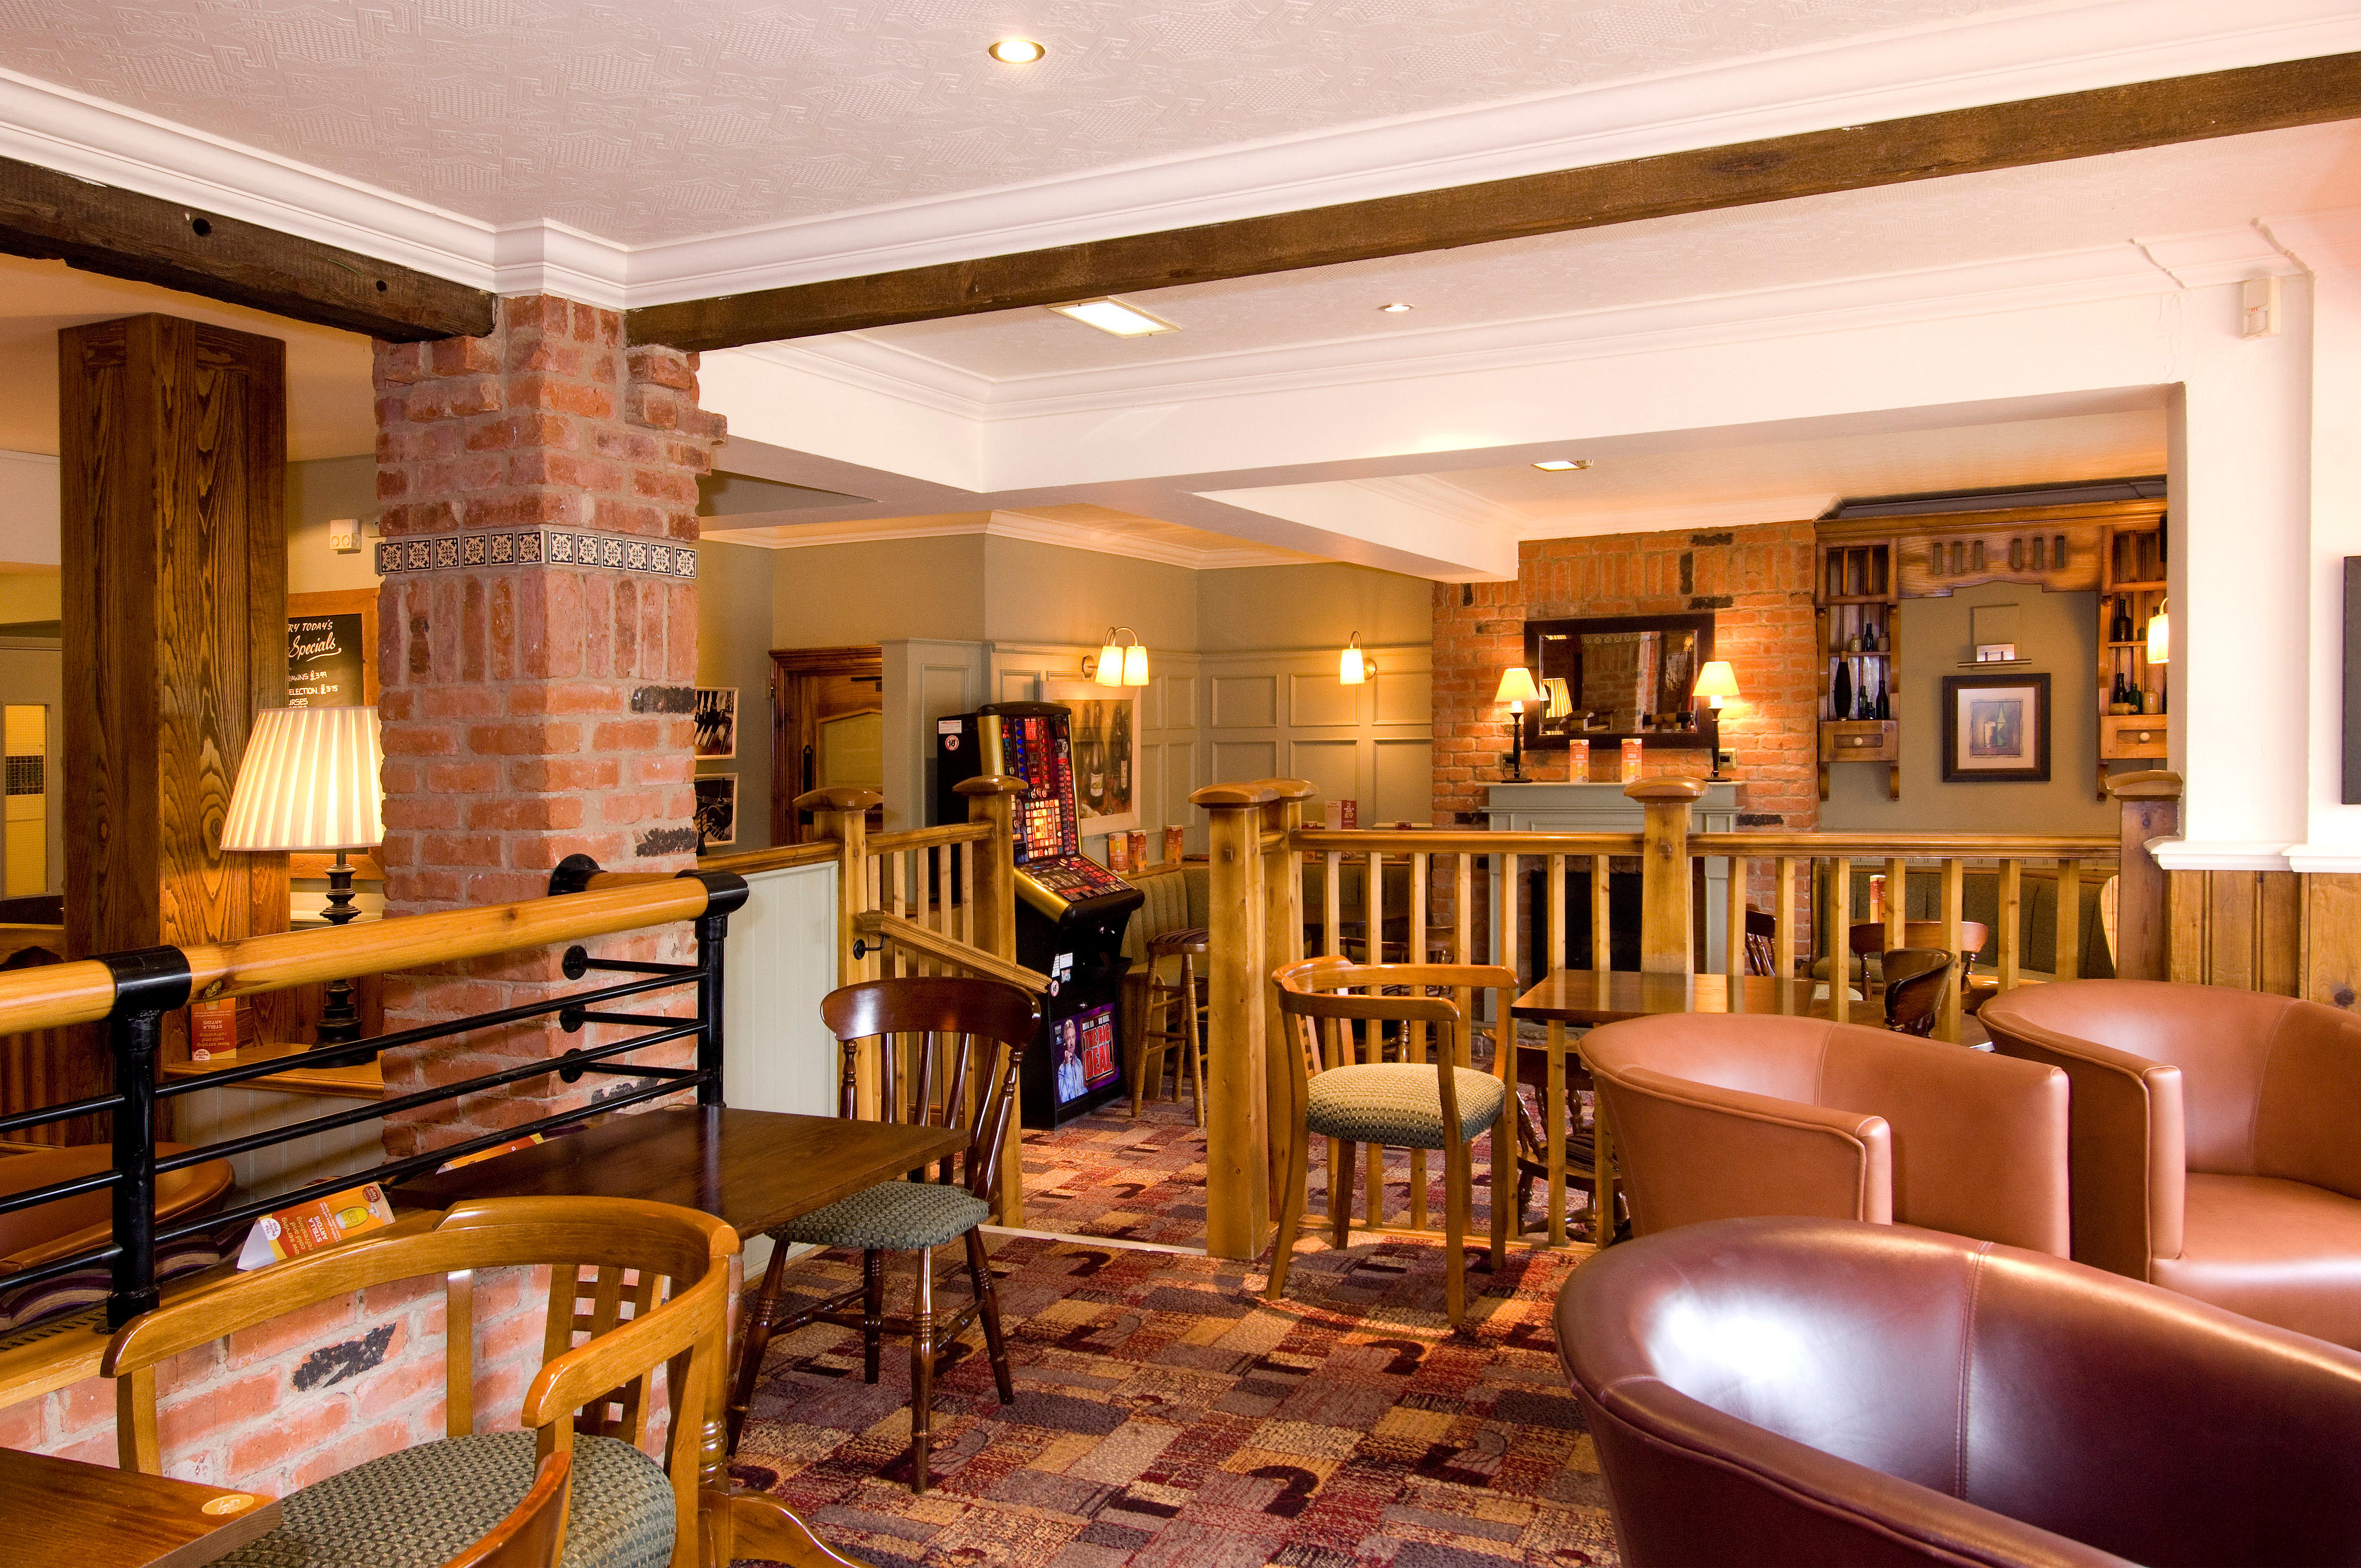 Brewers Fayre restaurant Premier Inn Bradford North (Bingley) hotel Keighley 03337 773937